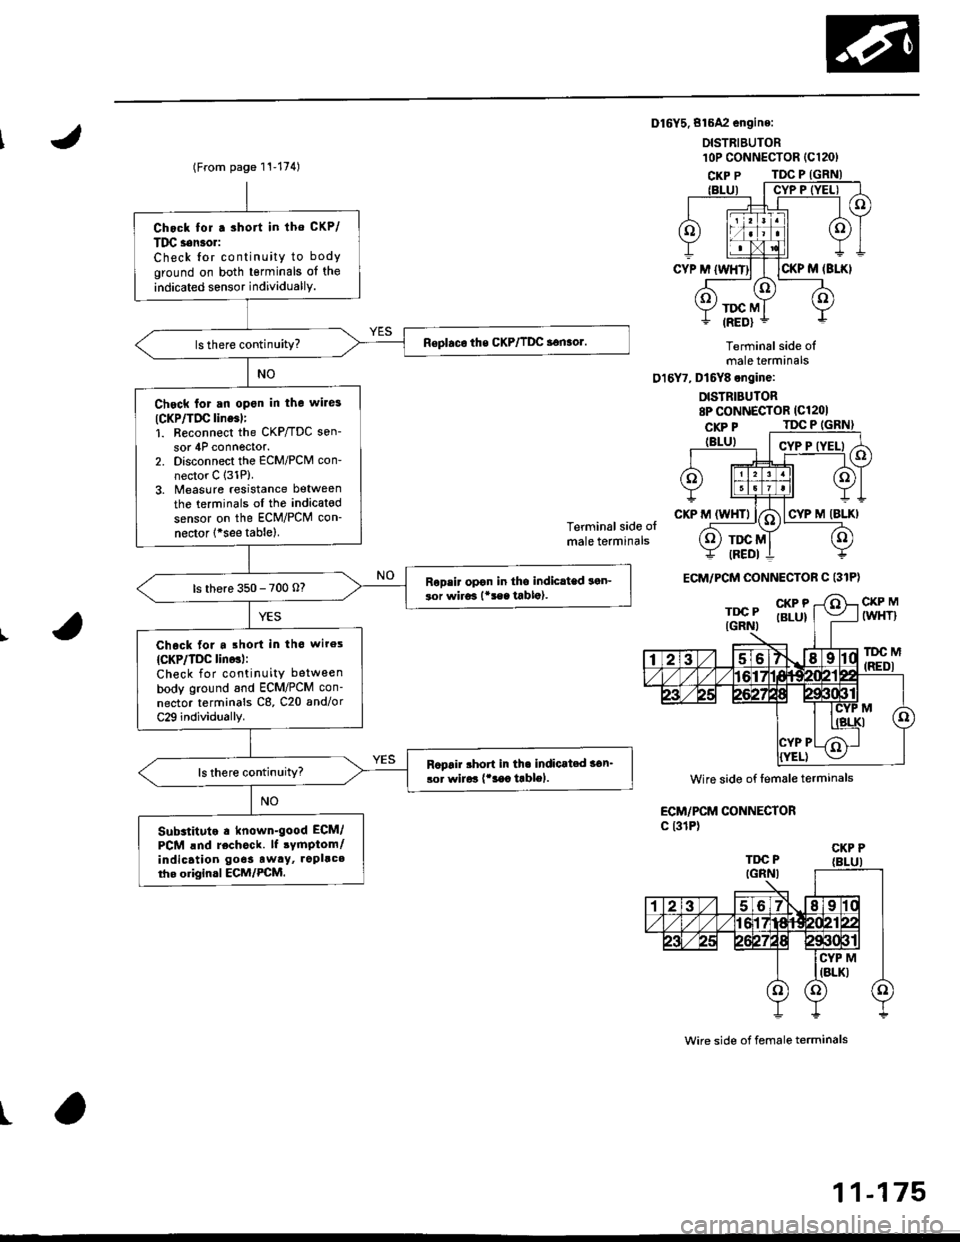 HONDA CIVIC 1997 6.G User Guide Dl6Y5.816A2 engine:
DISTRIEUTOR
Terminal side olmale terminals
016Y7, Dt6Y8 engine:
DISTRIBUTOR8P CONNECTOR (Cl201
Terminal side olmale terminals
CKP MIWHT}
lDC M(REDI
ECM/PCM CONNECTORc l31P)
wire si